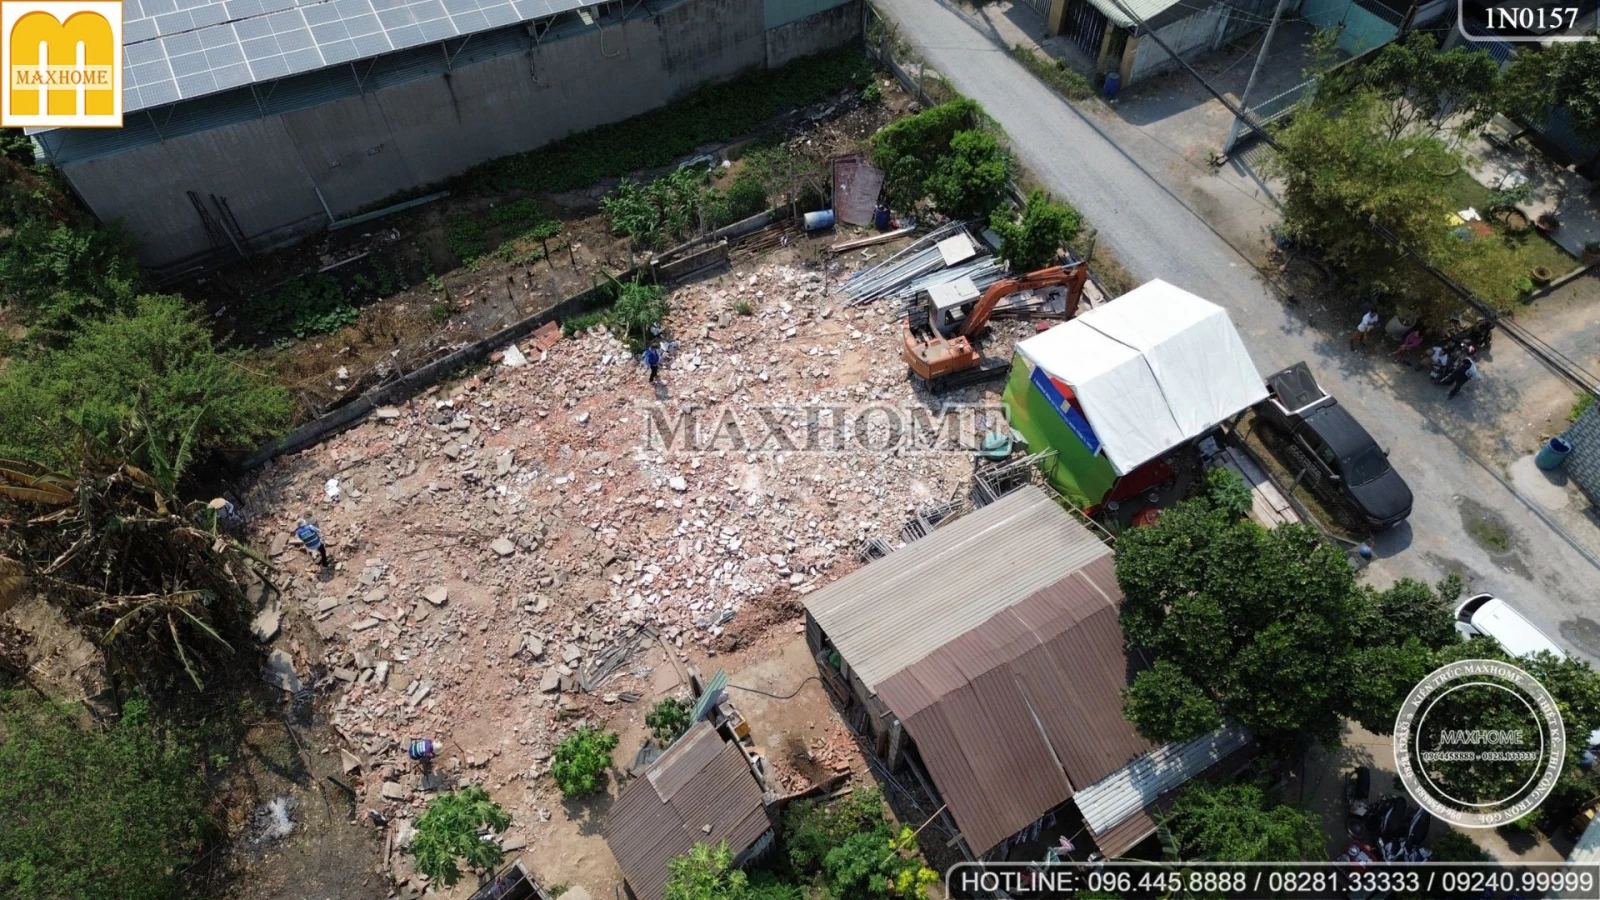 Lễ khởi công động thổ công trình nhà 2 tầng mái Nhật Maxhome thi công trọn gói tại Củ Chi | MH03214